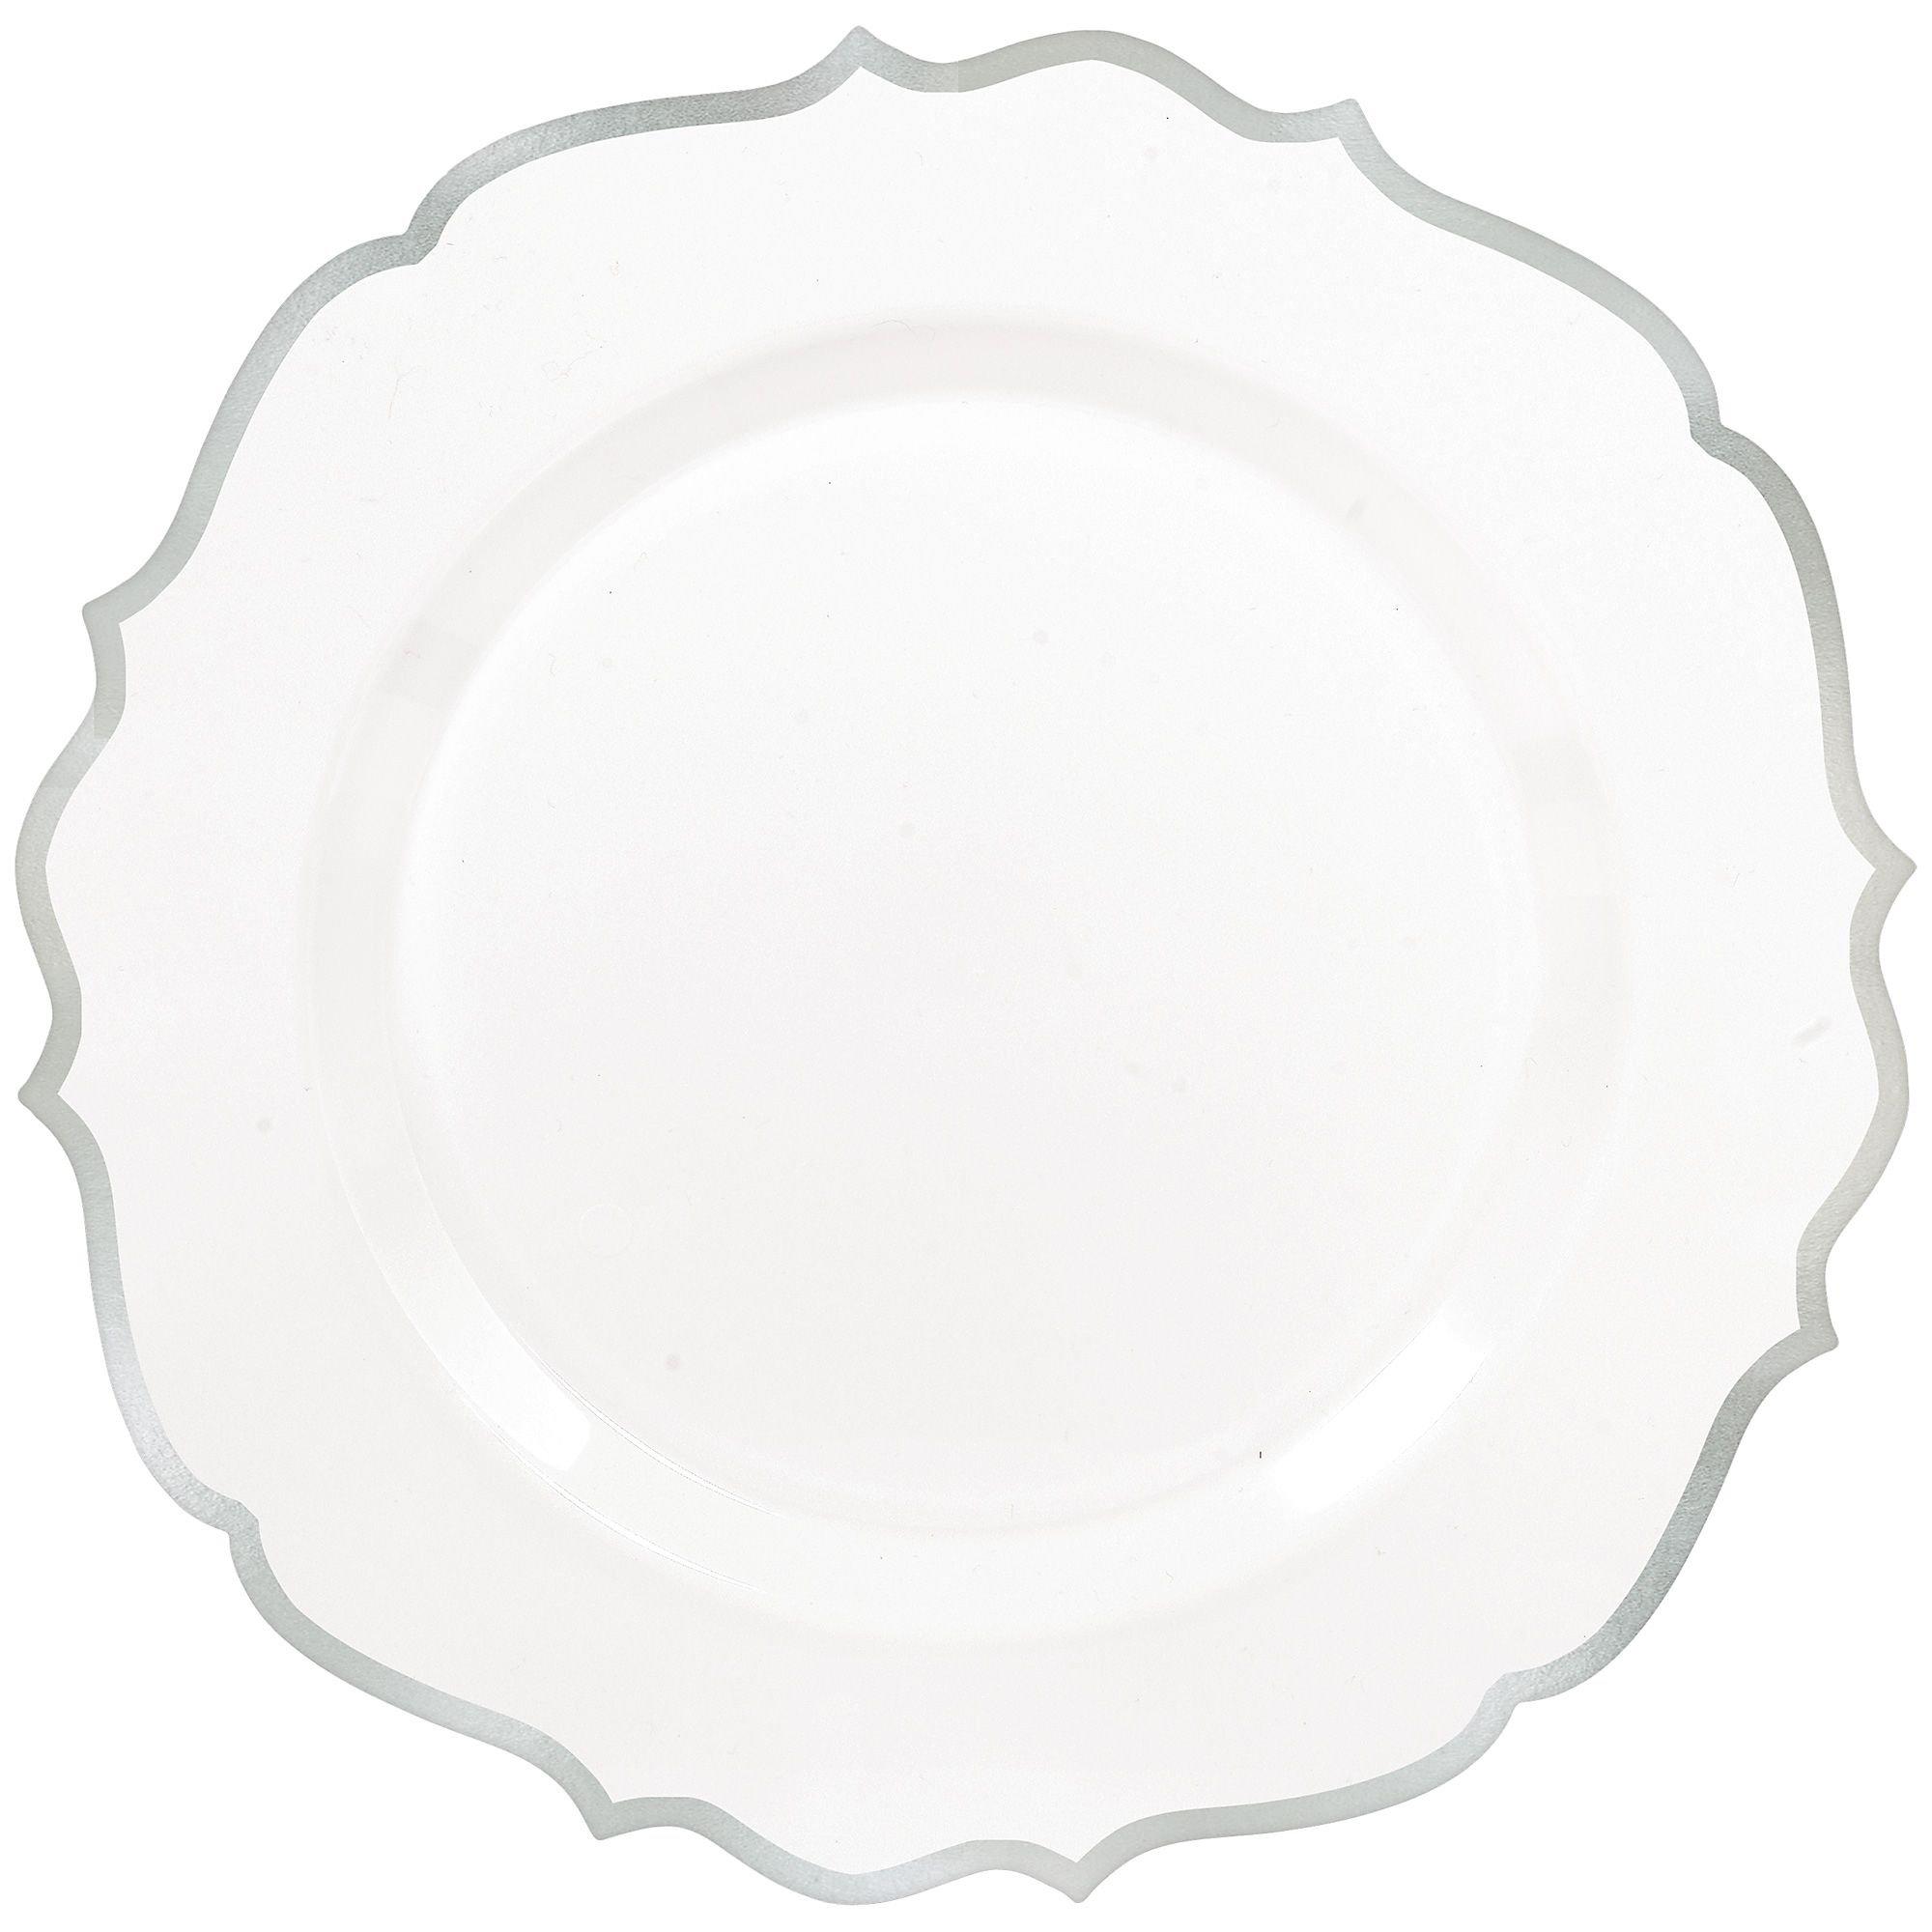 White With Ornate Rim Premium Plastic Dinner Plates, 10.5in, 20ct